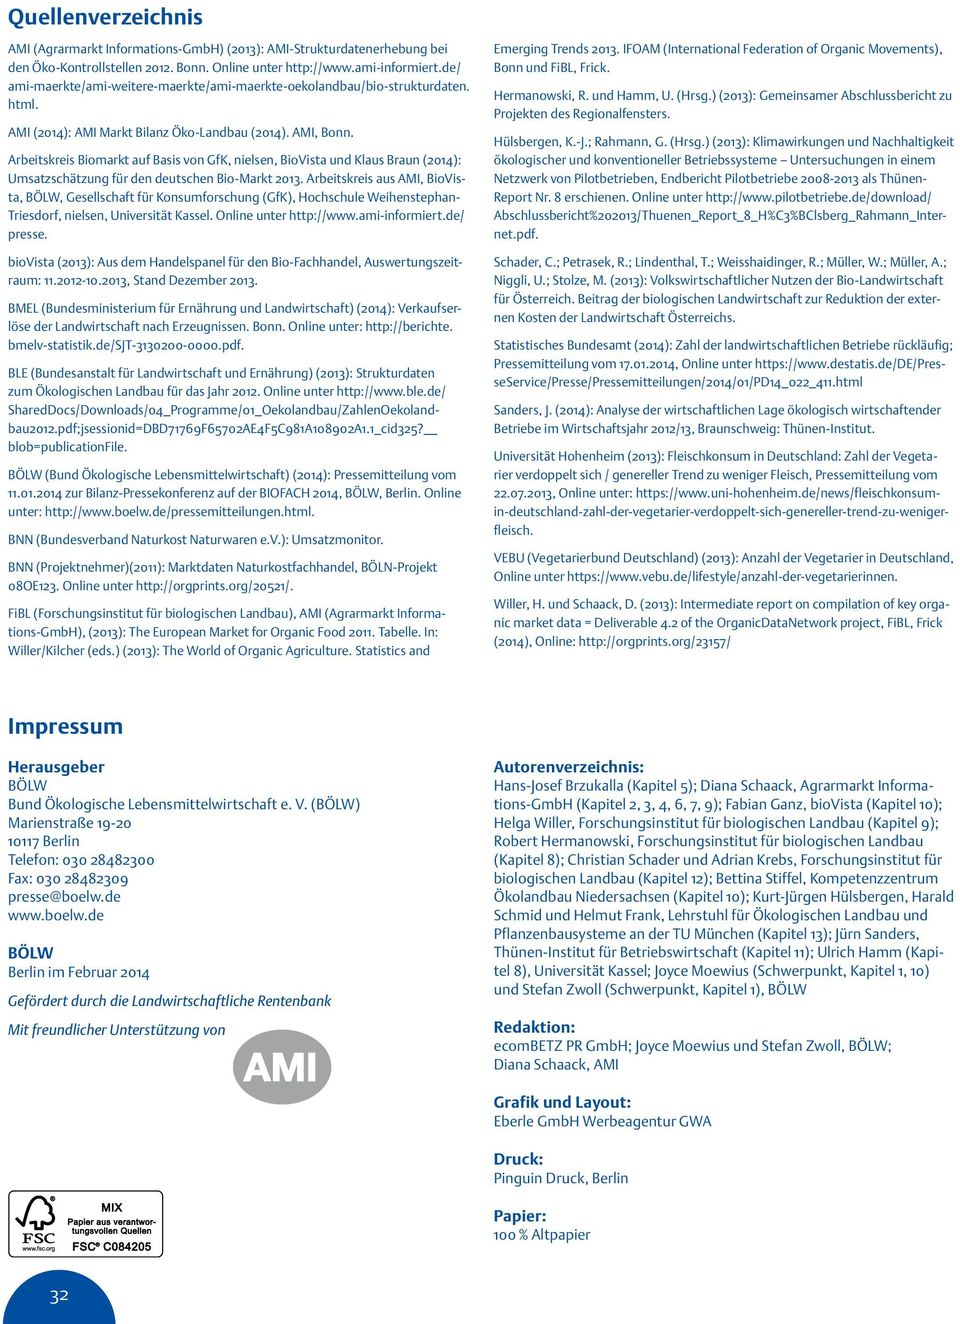 Arbeitskreis Biomarkt auf Basis von GfK, nielsen, BioVista und Klaus Braun (214): Umsatzschätzung für den deutschen Bio-Markt 213.